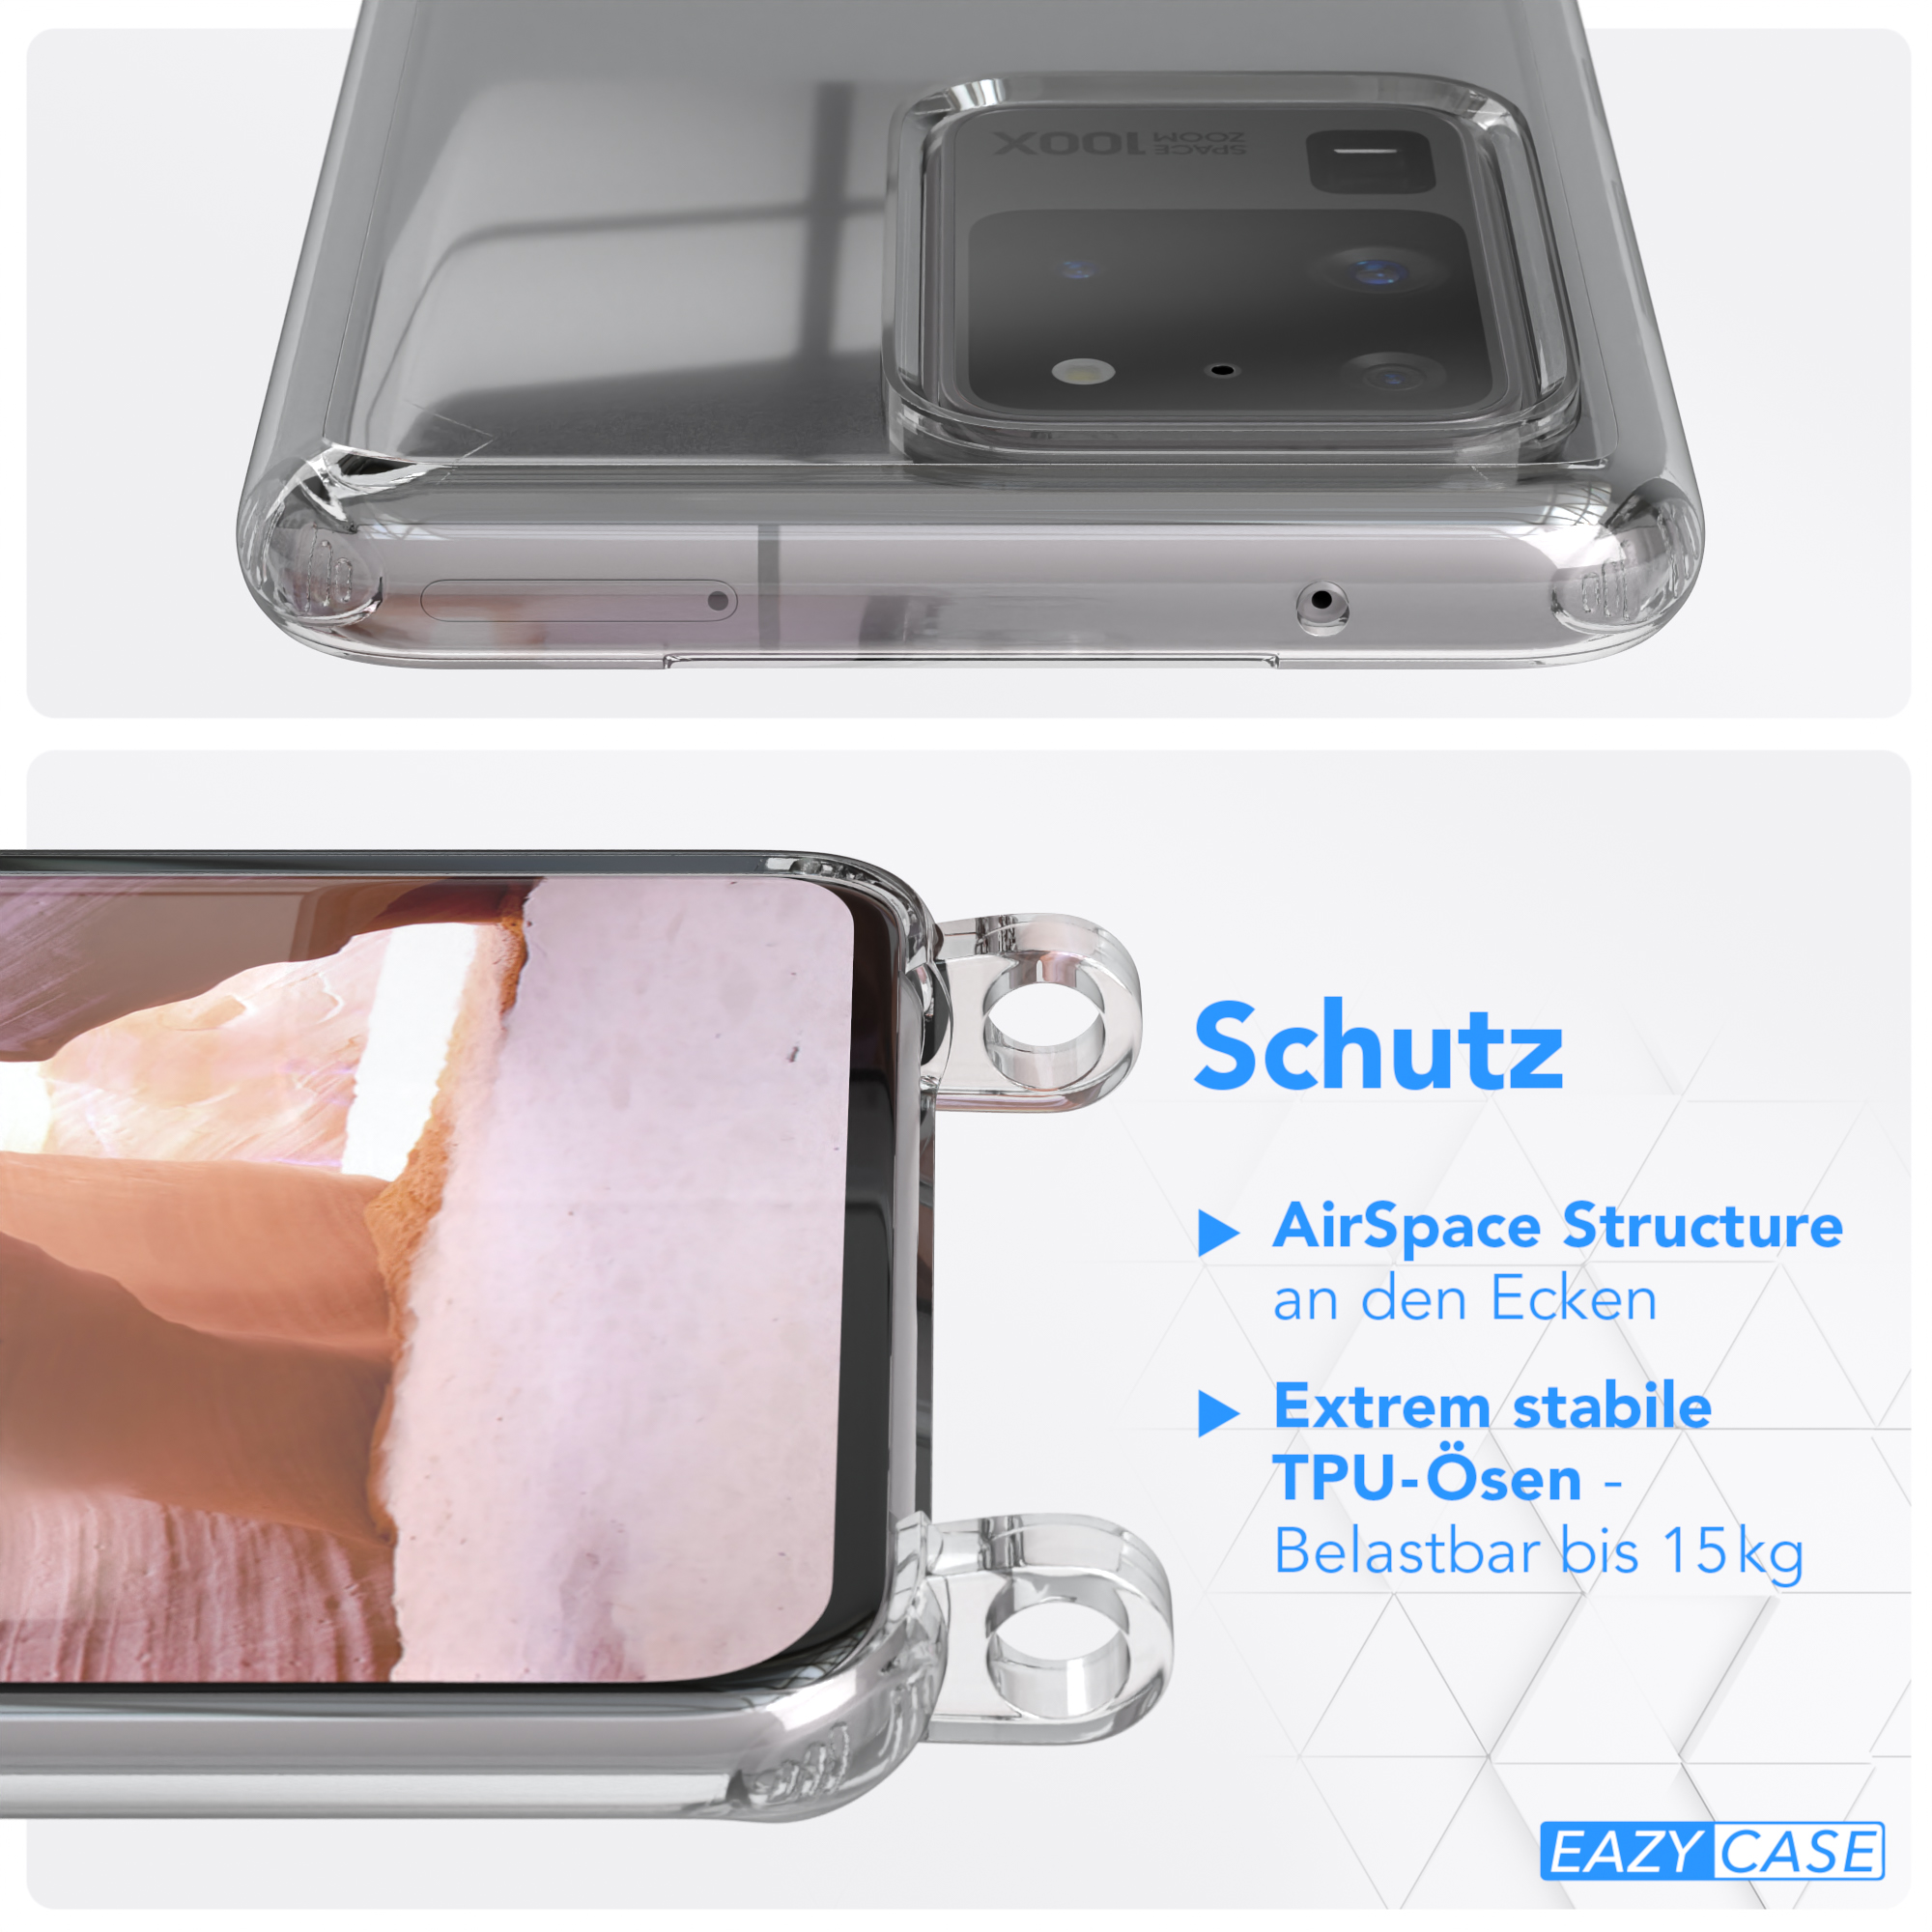 Galaxy S20 Samsung, Ultra / + Umhängetasche, breiter 5G, Altrosa / Transparente EAZY Handyhülle CASE Coral S20 Kordel mit Ultra Karabiner,